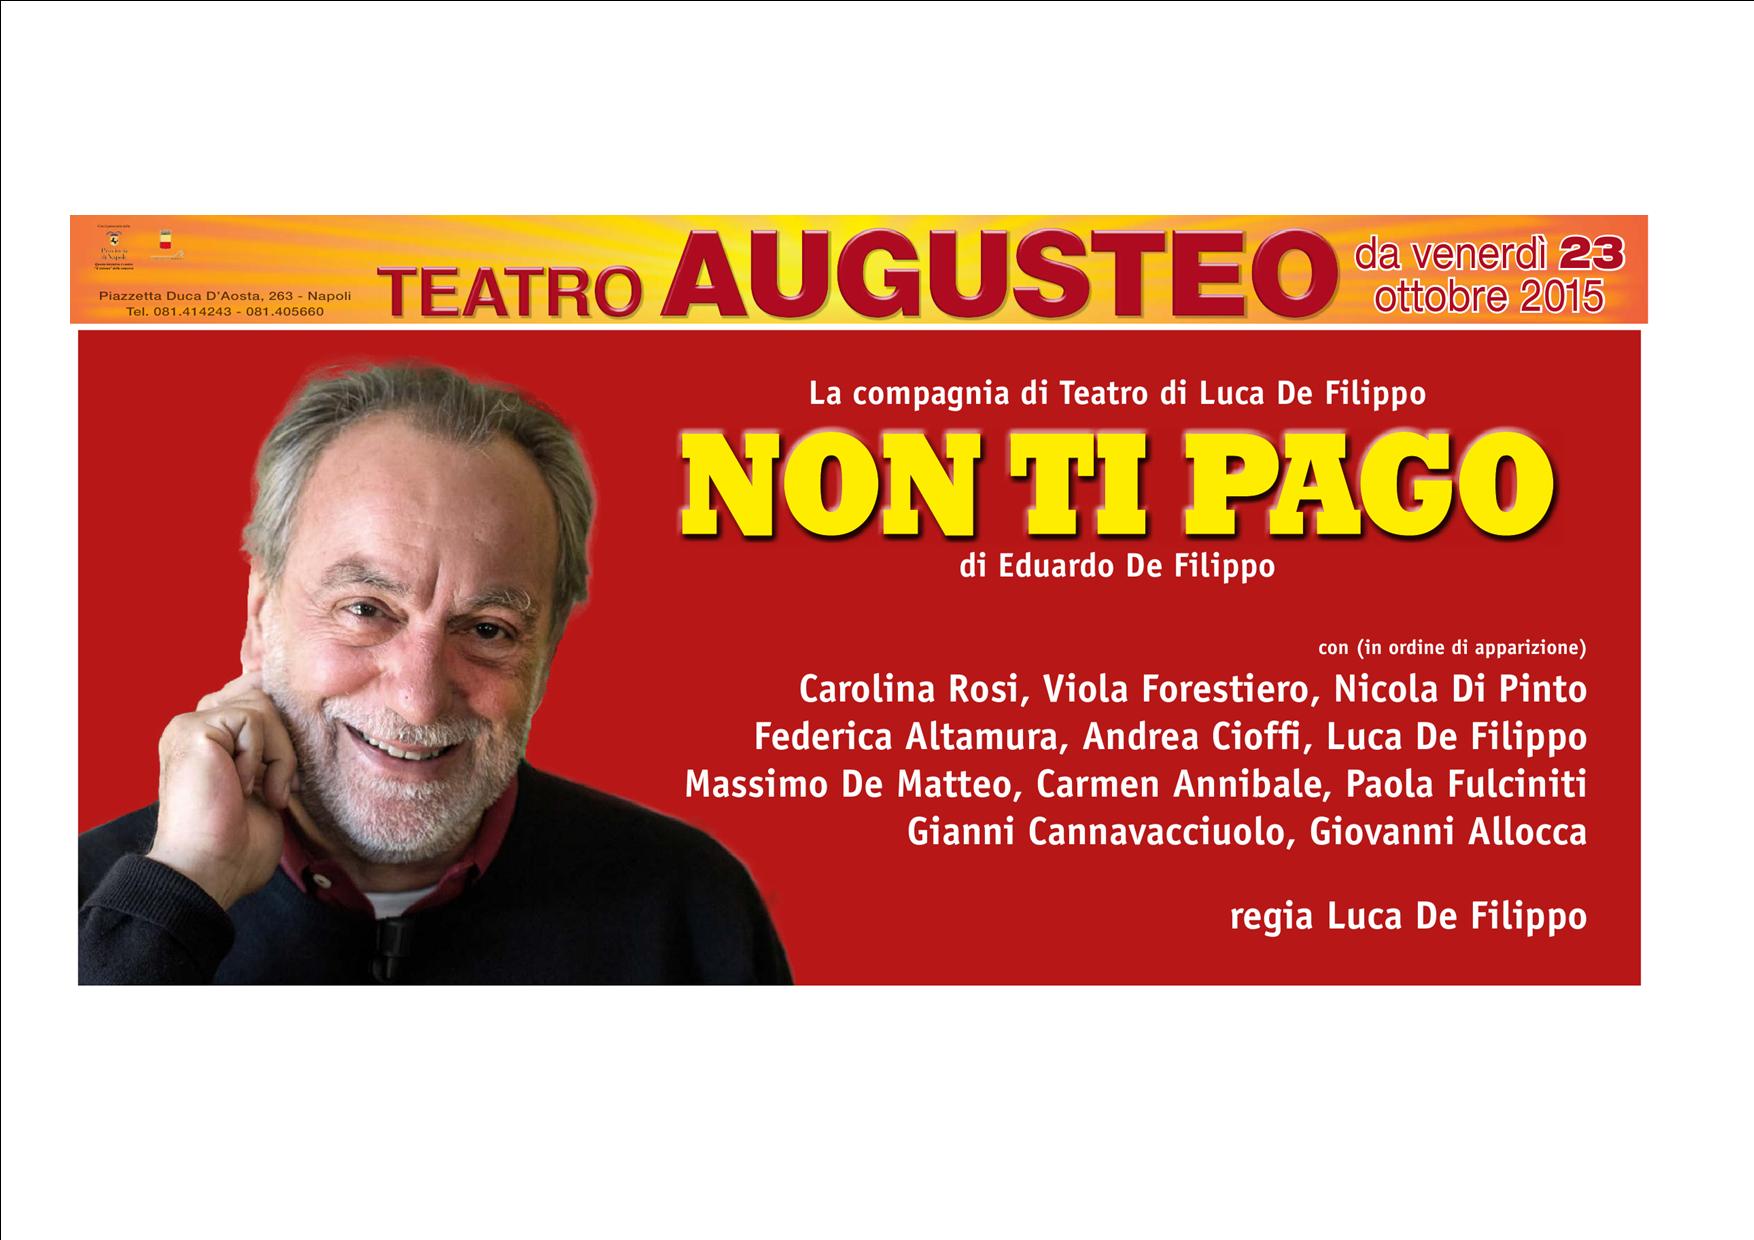  Luca De Filippo debutta il 23 ottobre al Teatro Augusteo con lo spettacolo “Non ti pago”